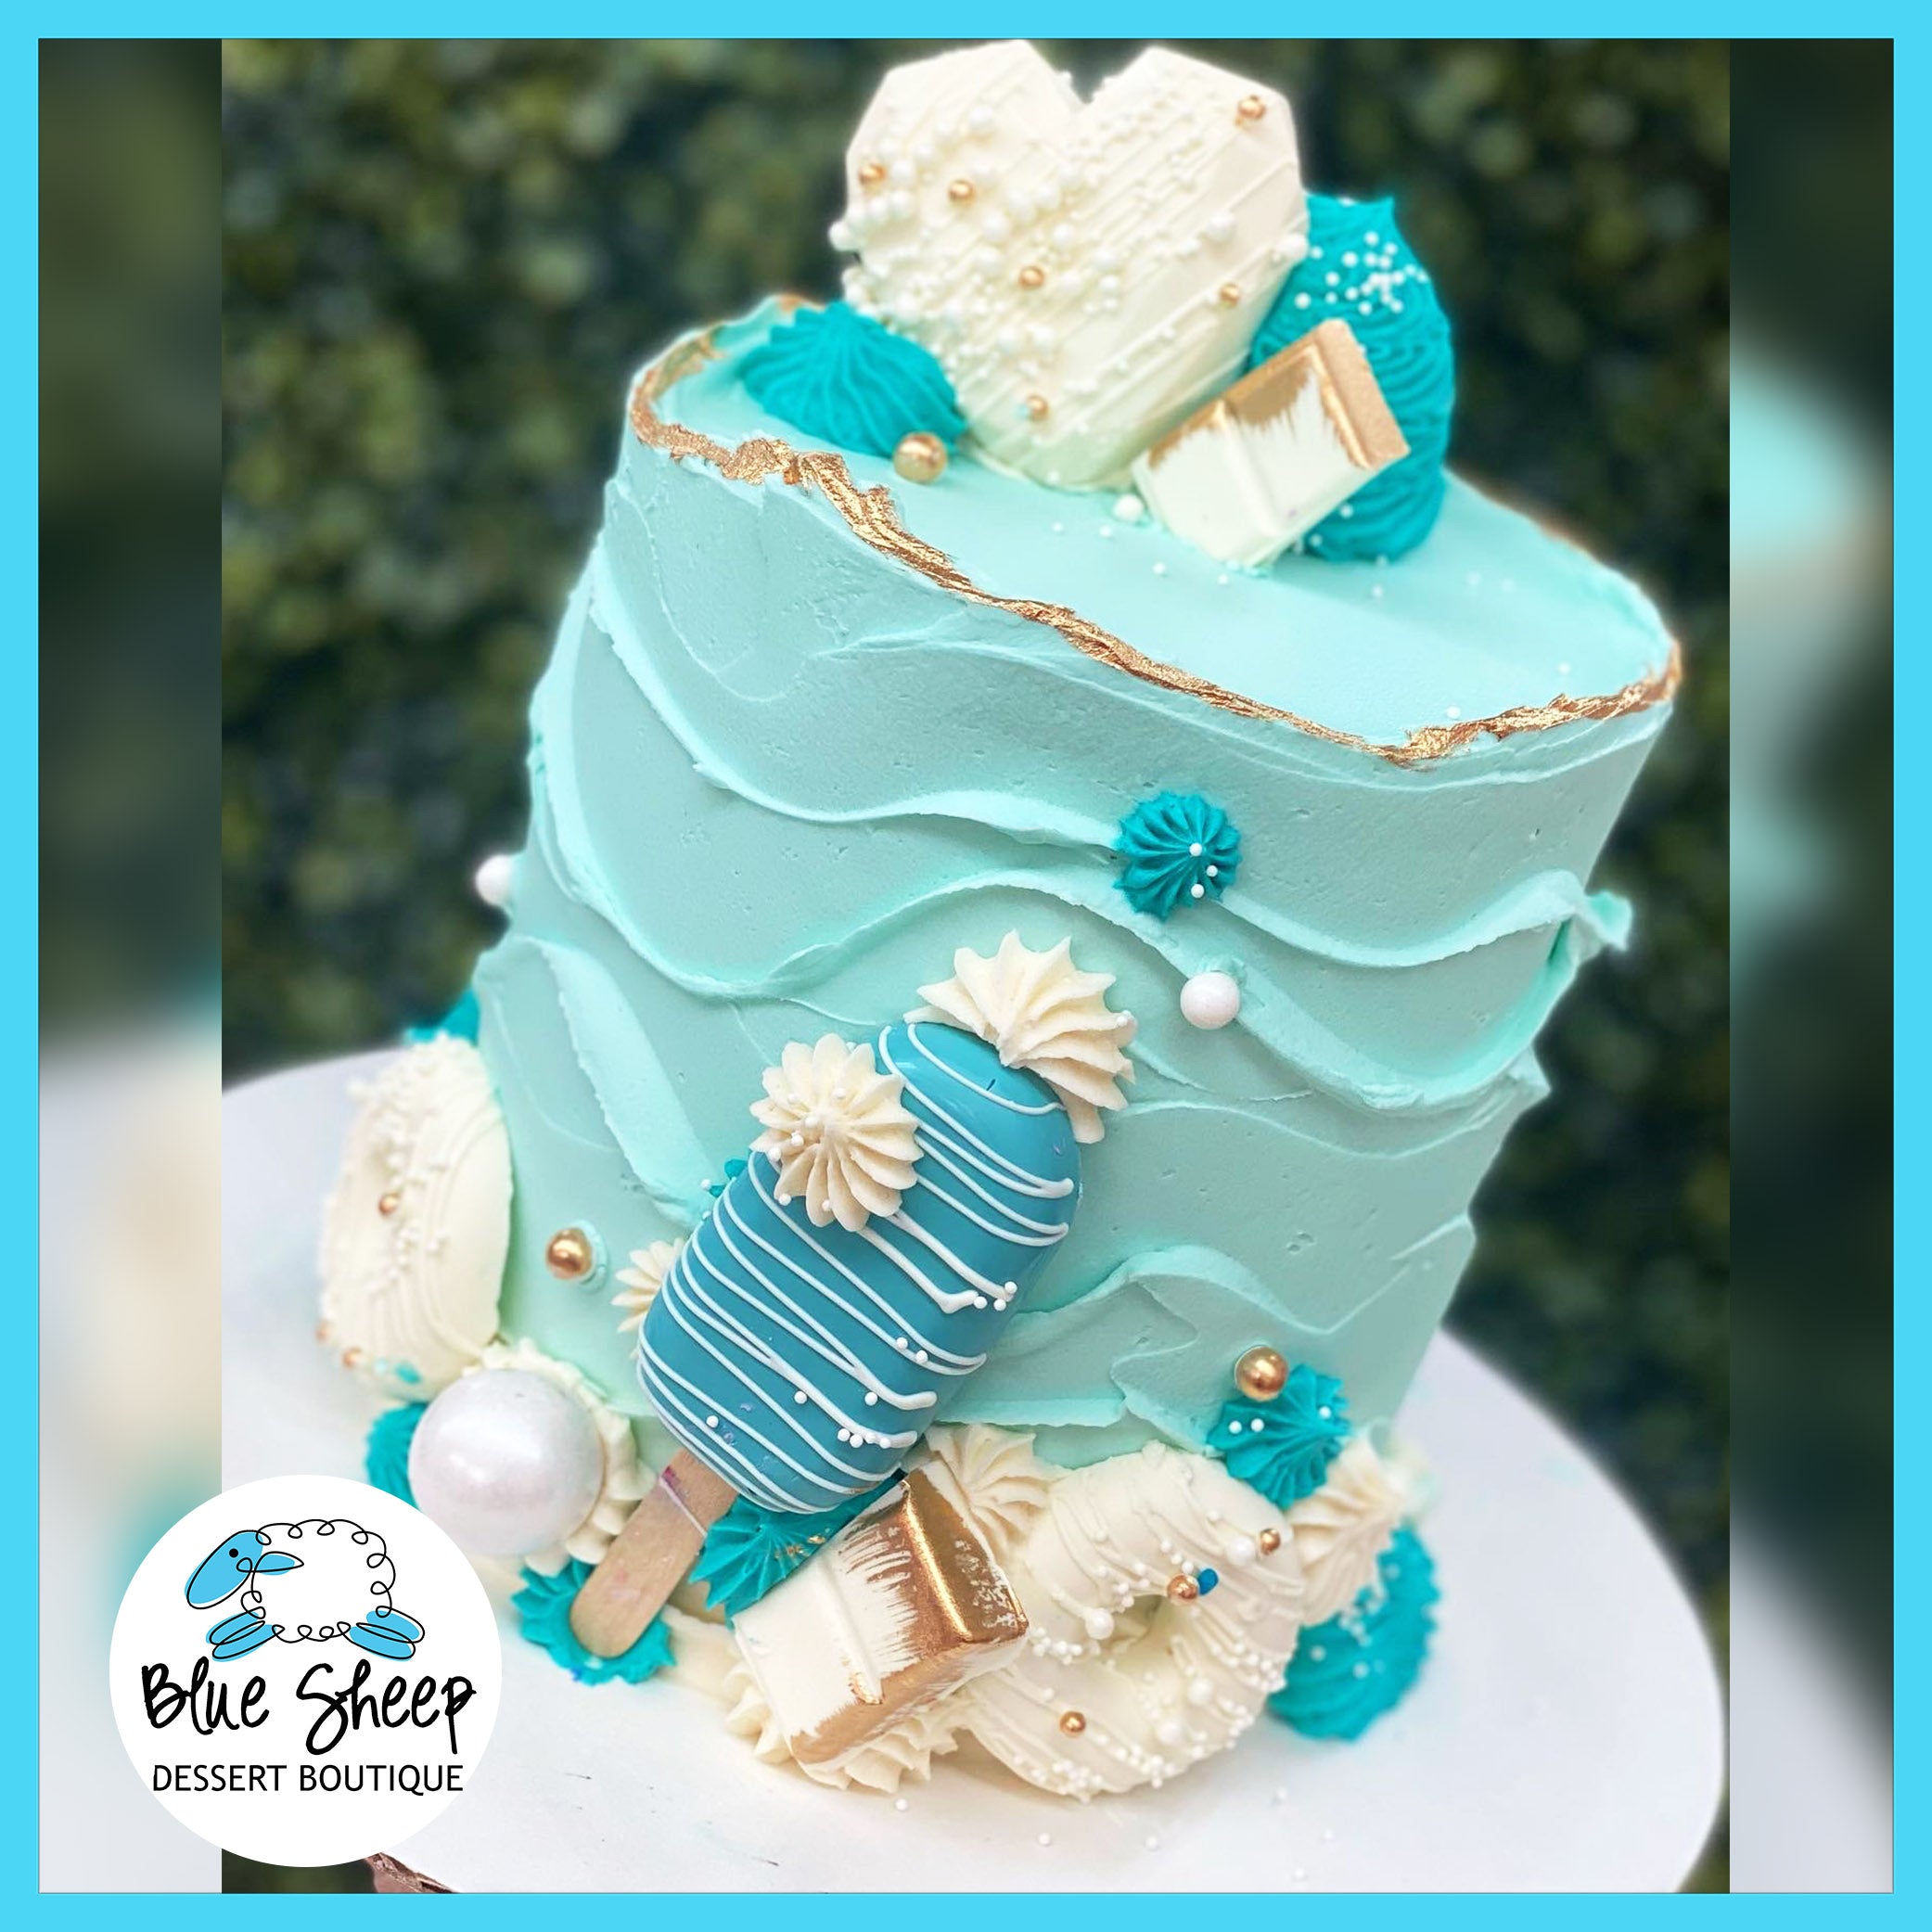 Tiffany Blue Decorated Cake